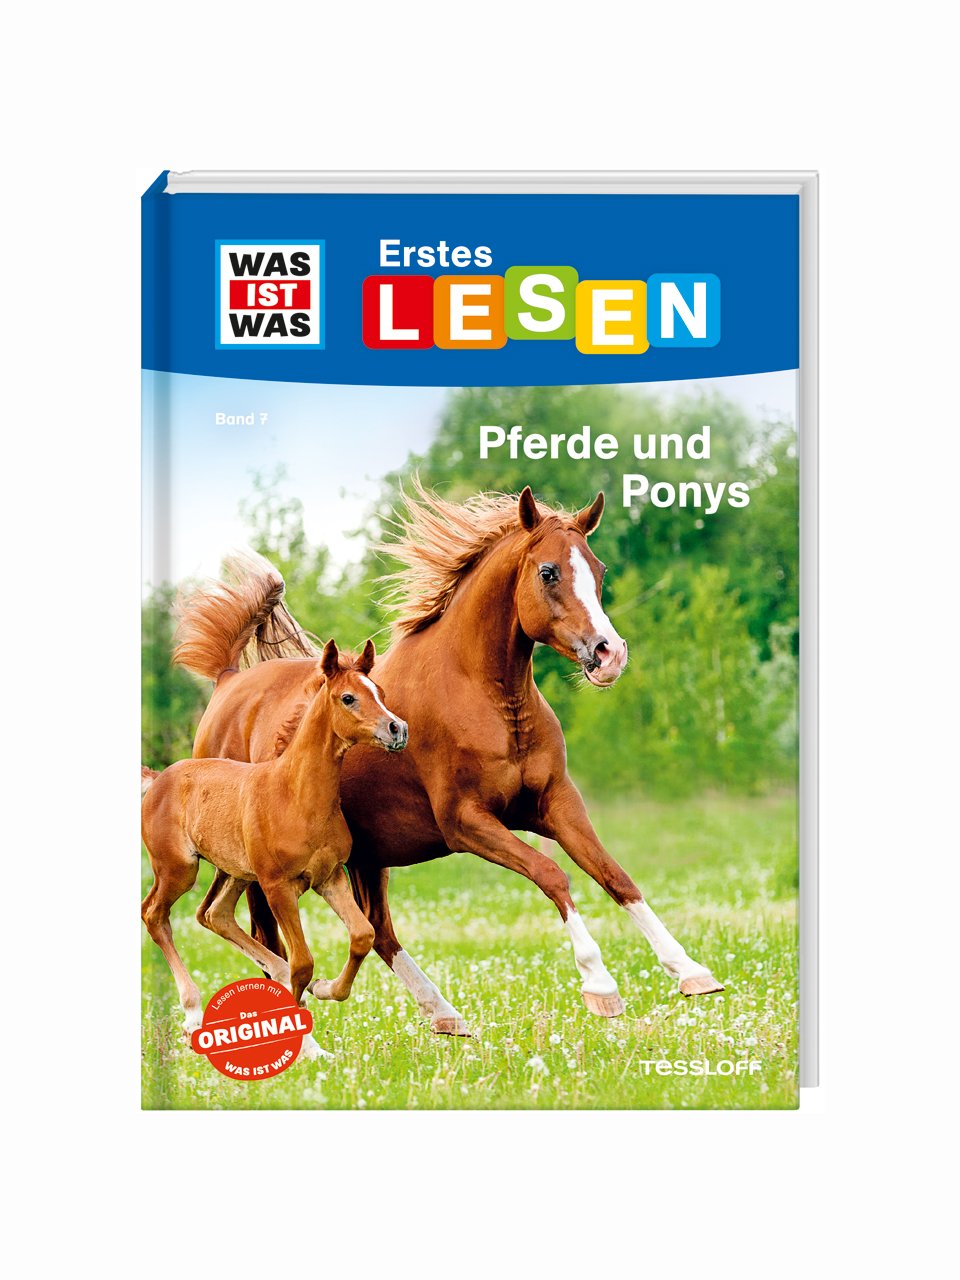 WAS IST WAS Erstes Lesen: Pferde und Ponys